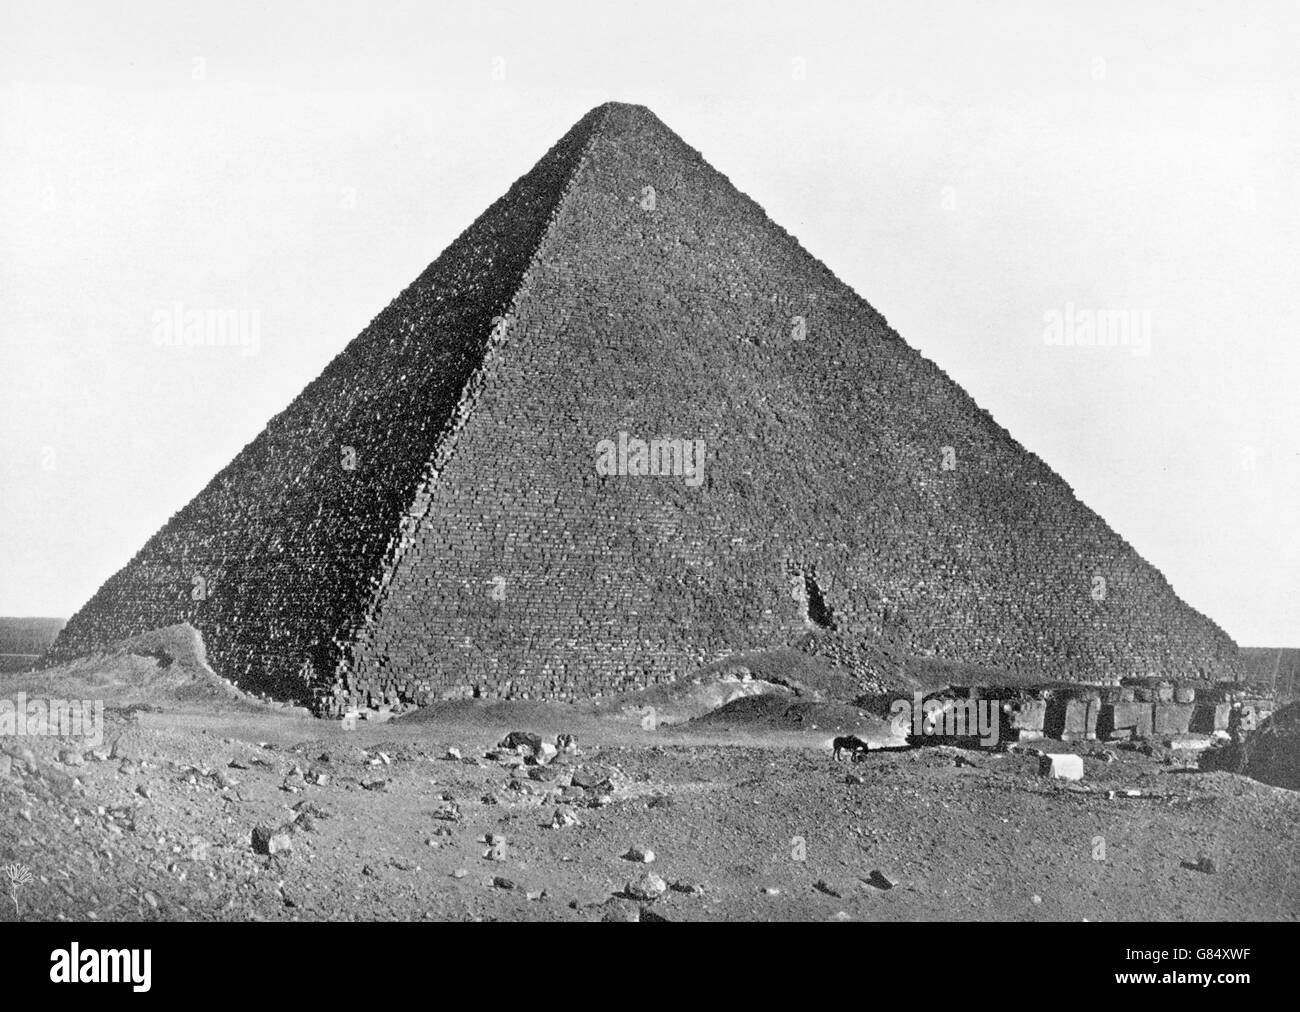 Die große Pyramide von Gizeh (auch bekannt als die Pyramide von Khufu oder der Pyramide des Cheops), die älteste und größte der drei Pyramiden in Gizeh Pyramidenanlage. Foto von 1890 bis 1902 von Kosmos Bilder Co, NY. Stockfoto